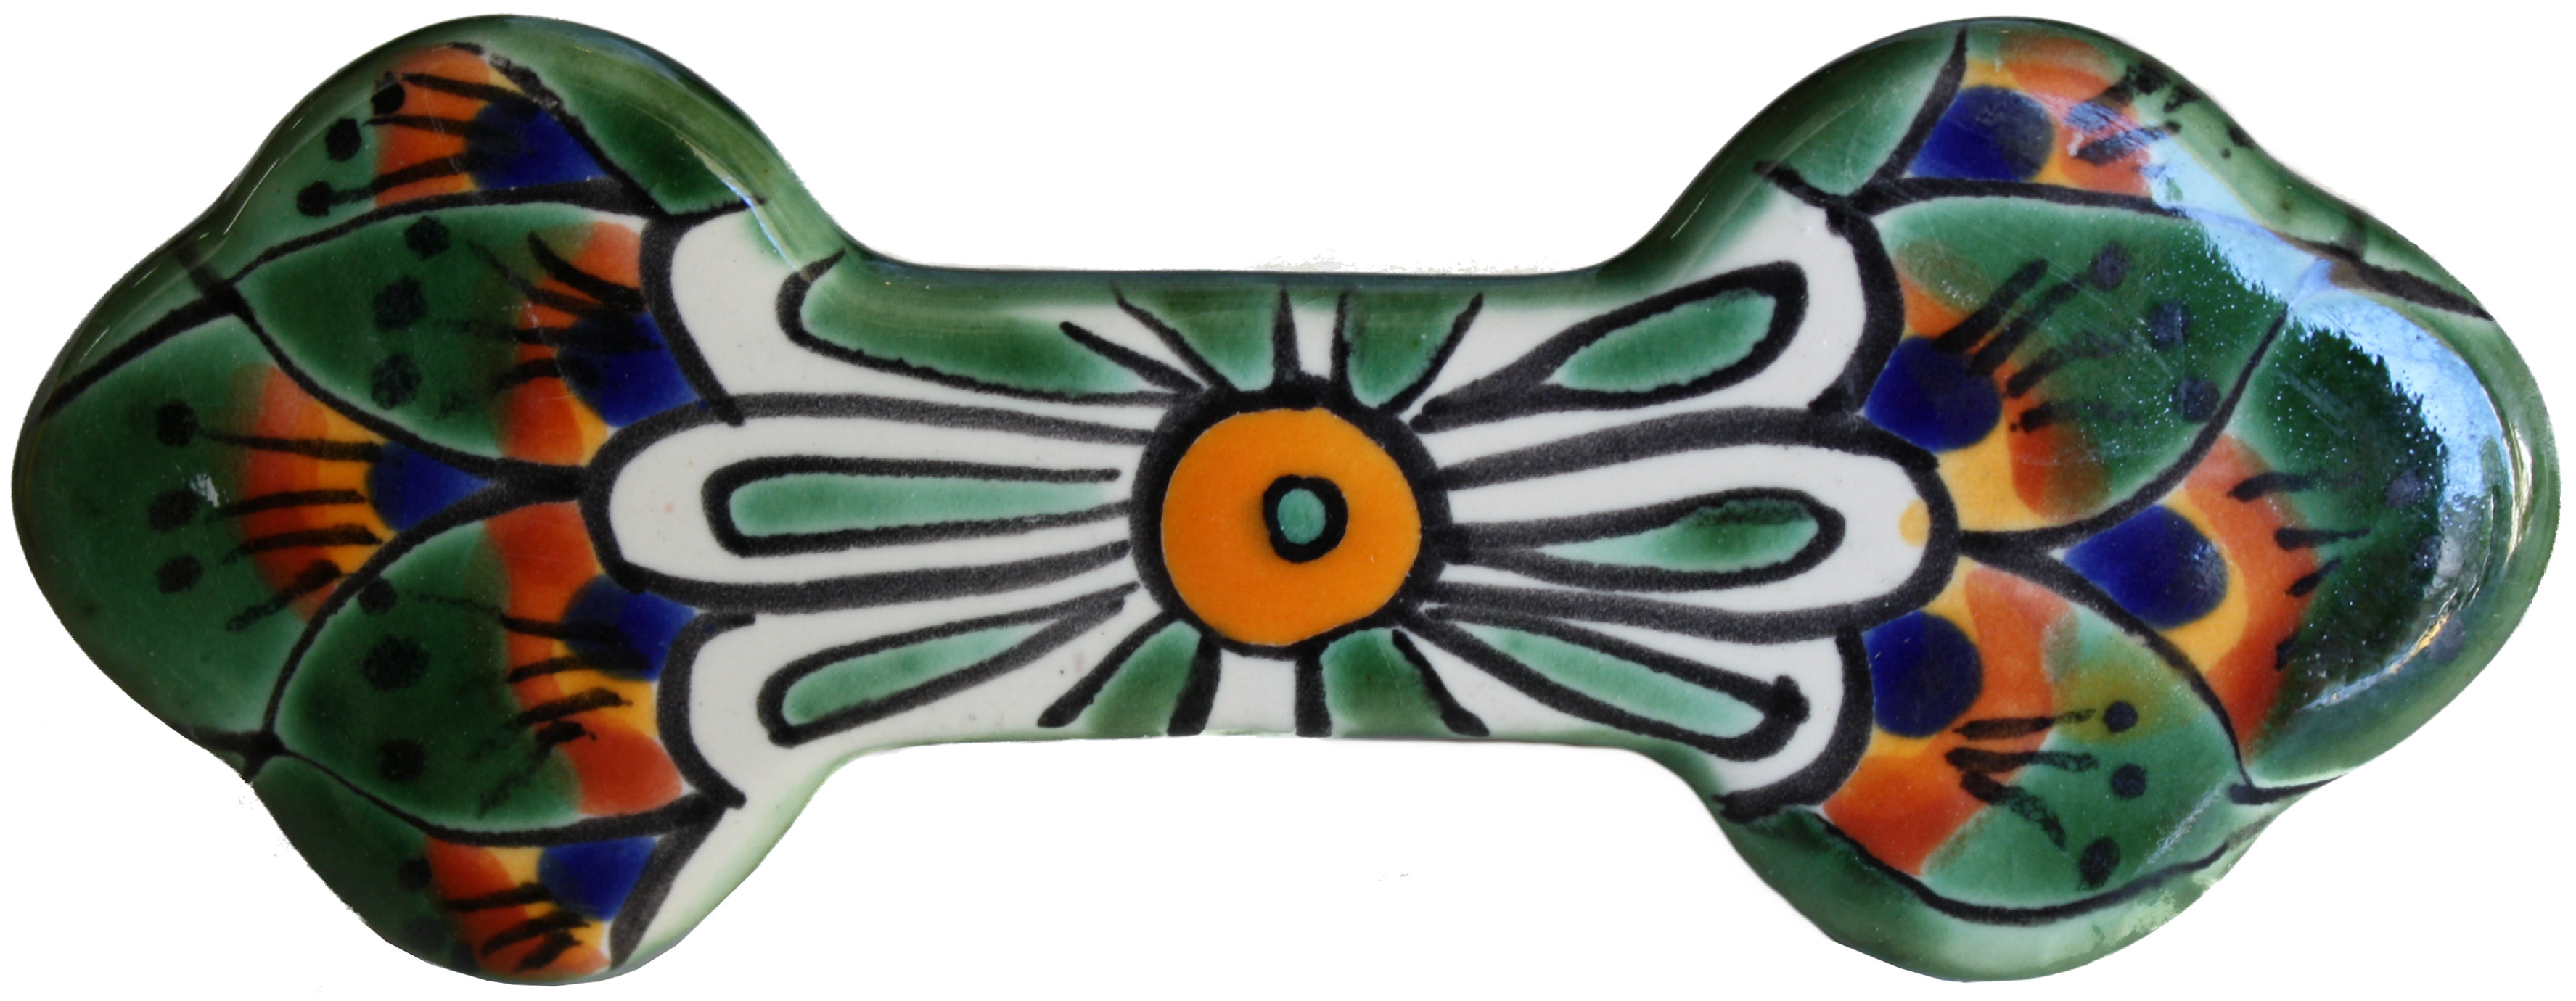 TalaMex Peacock Talavera Ceramic Drawer Pull